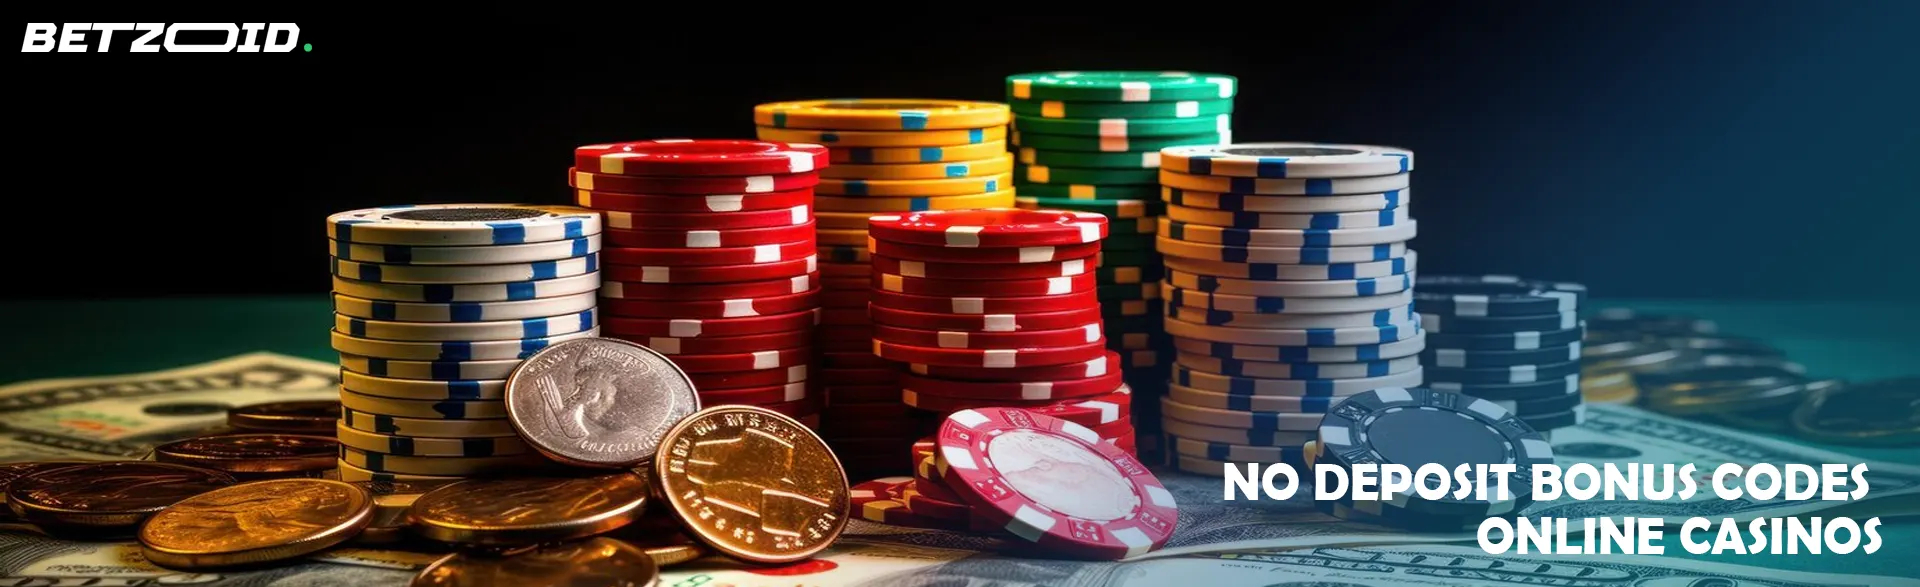 No Deposit Bonus Codes Online Casinos in Australia Rated Casinos with